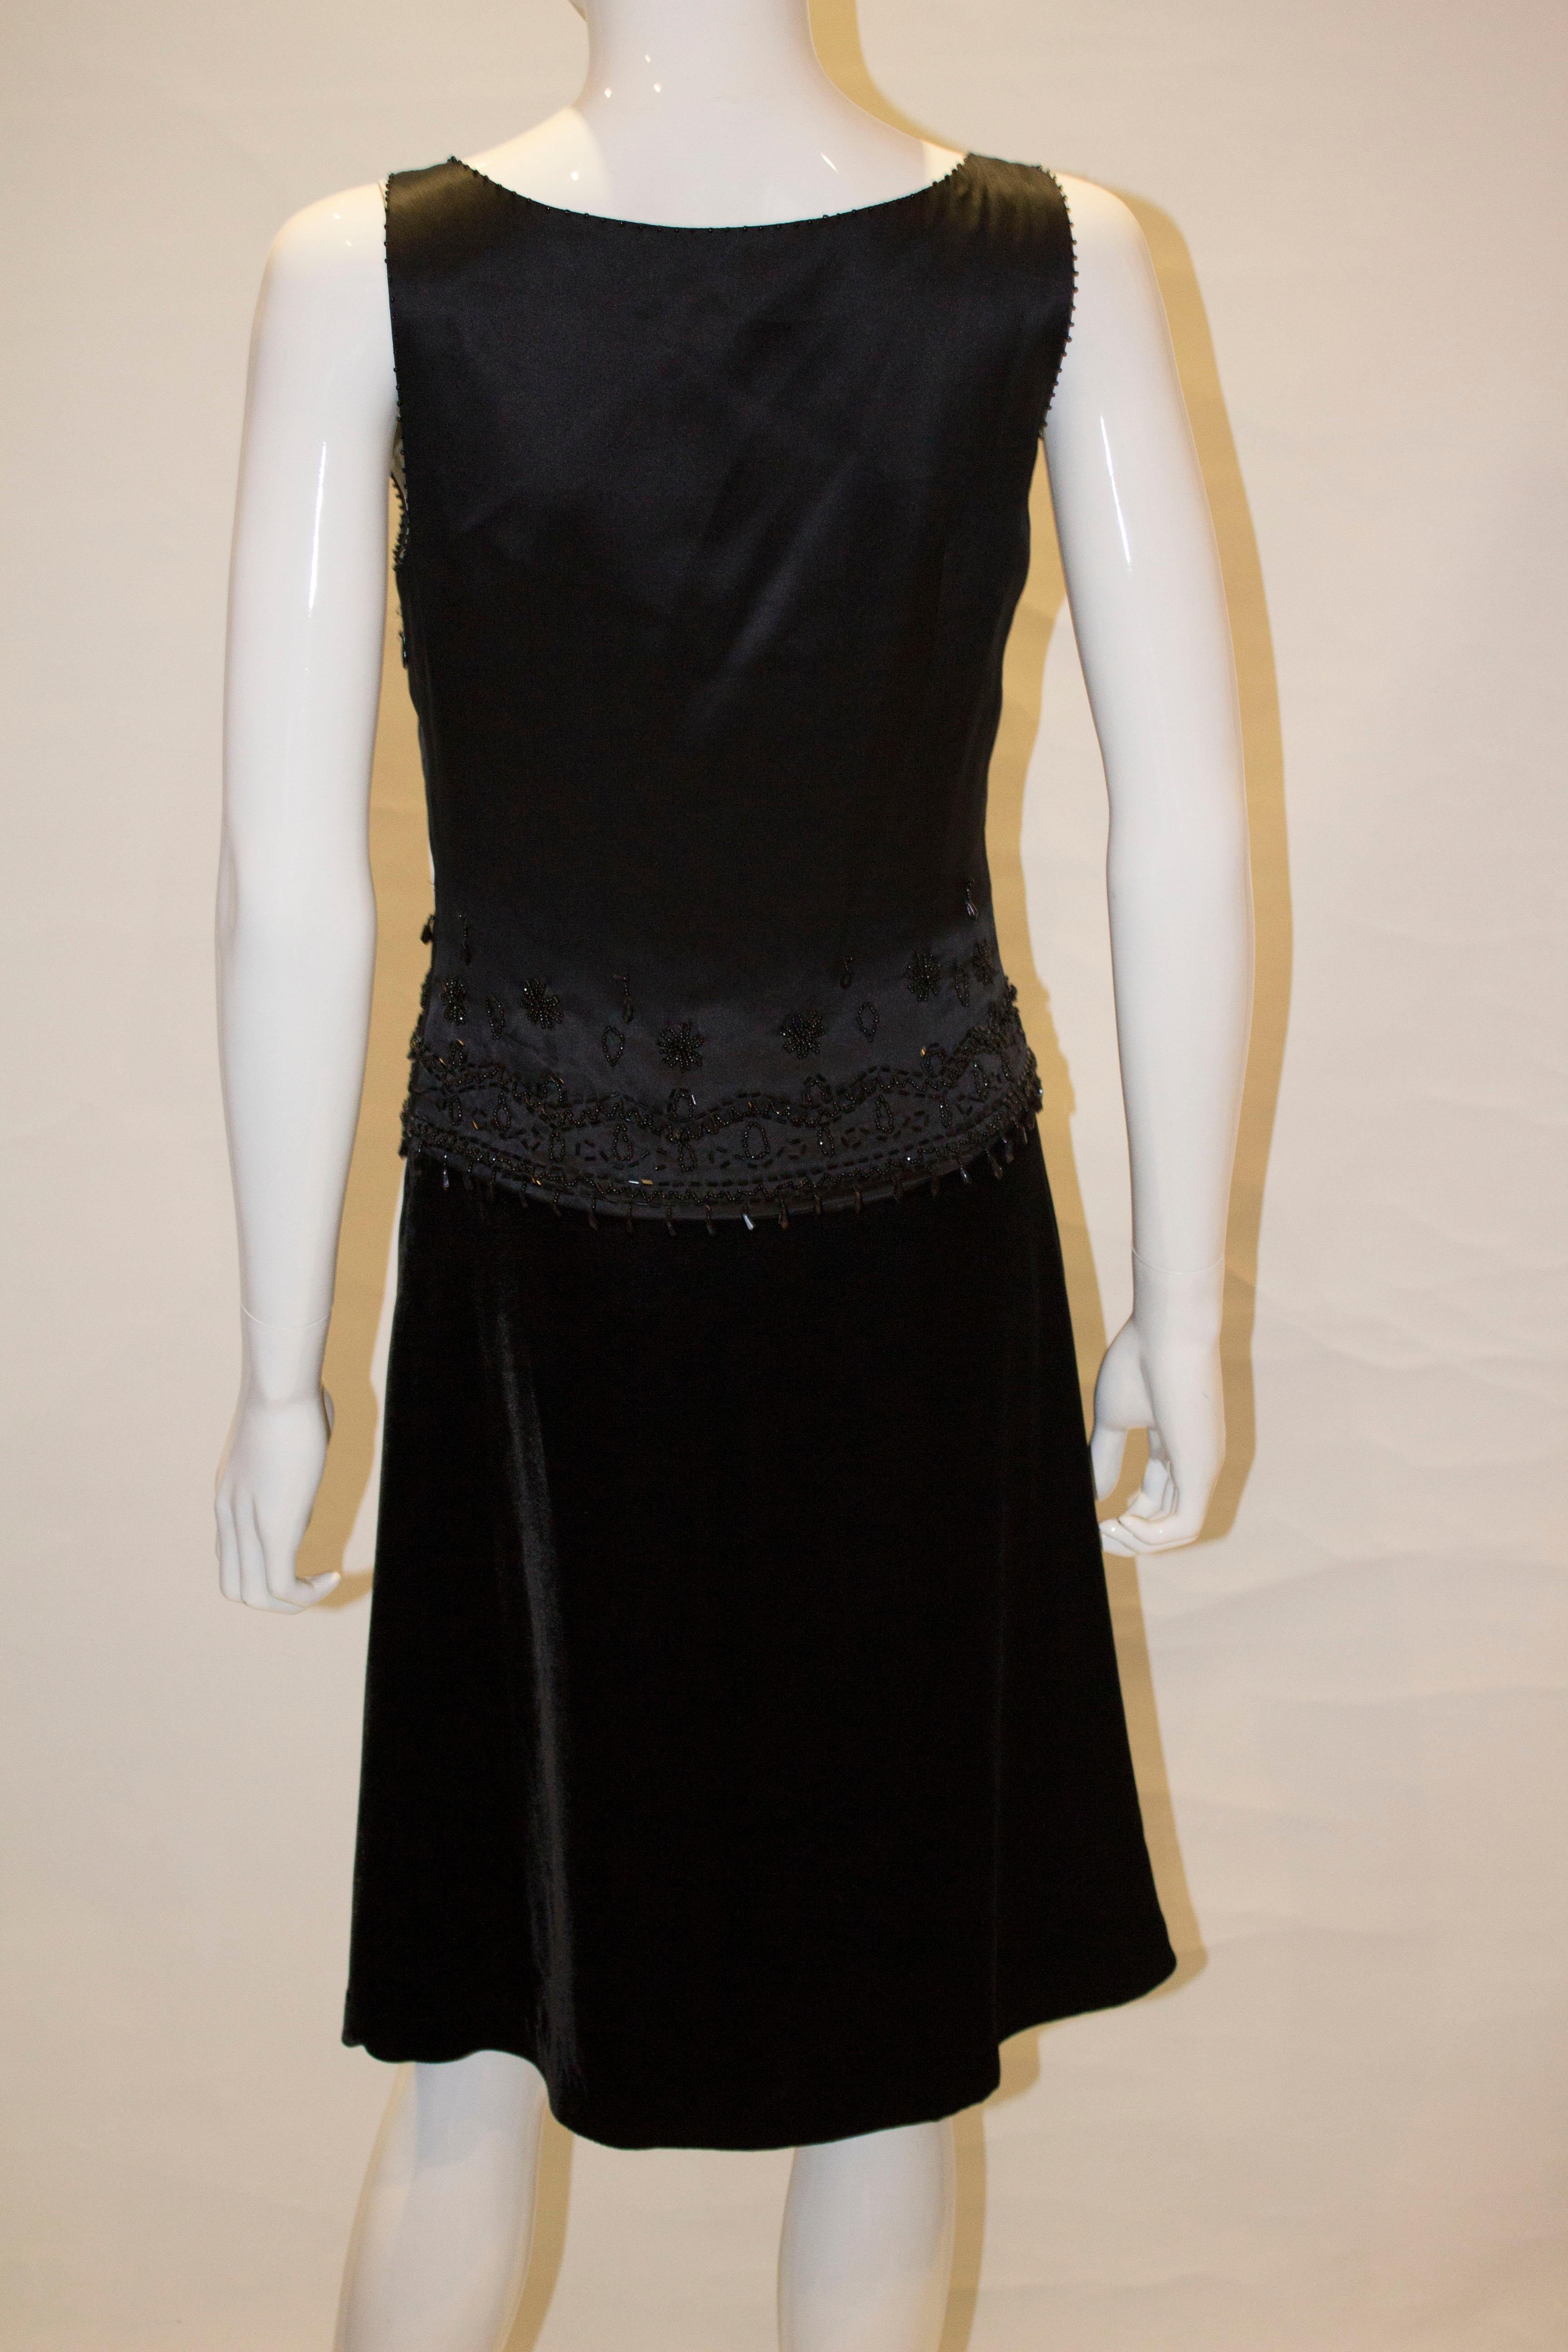 Black Cocktail Dress by Birger and Mikkelsen For Sale 4